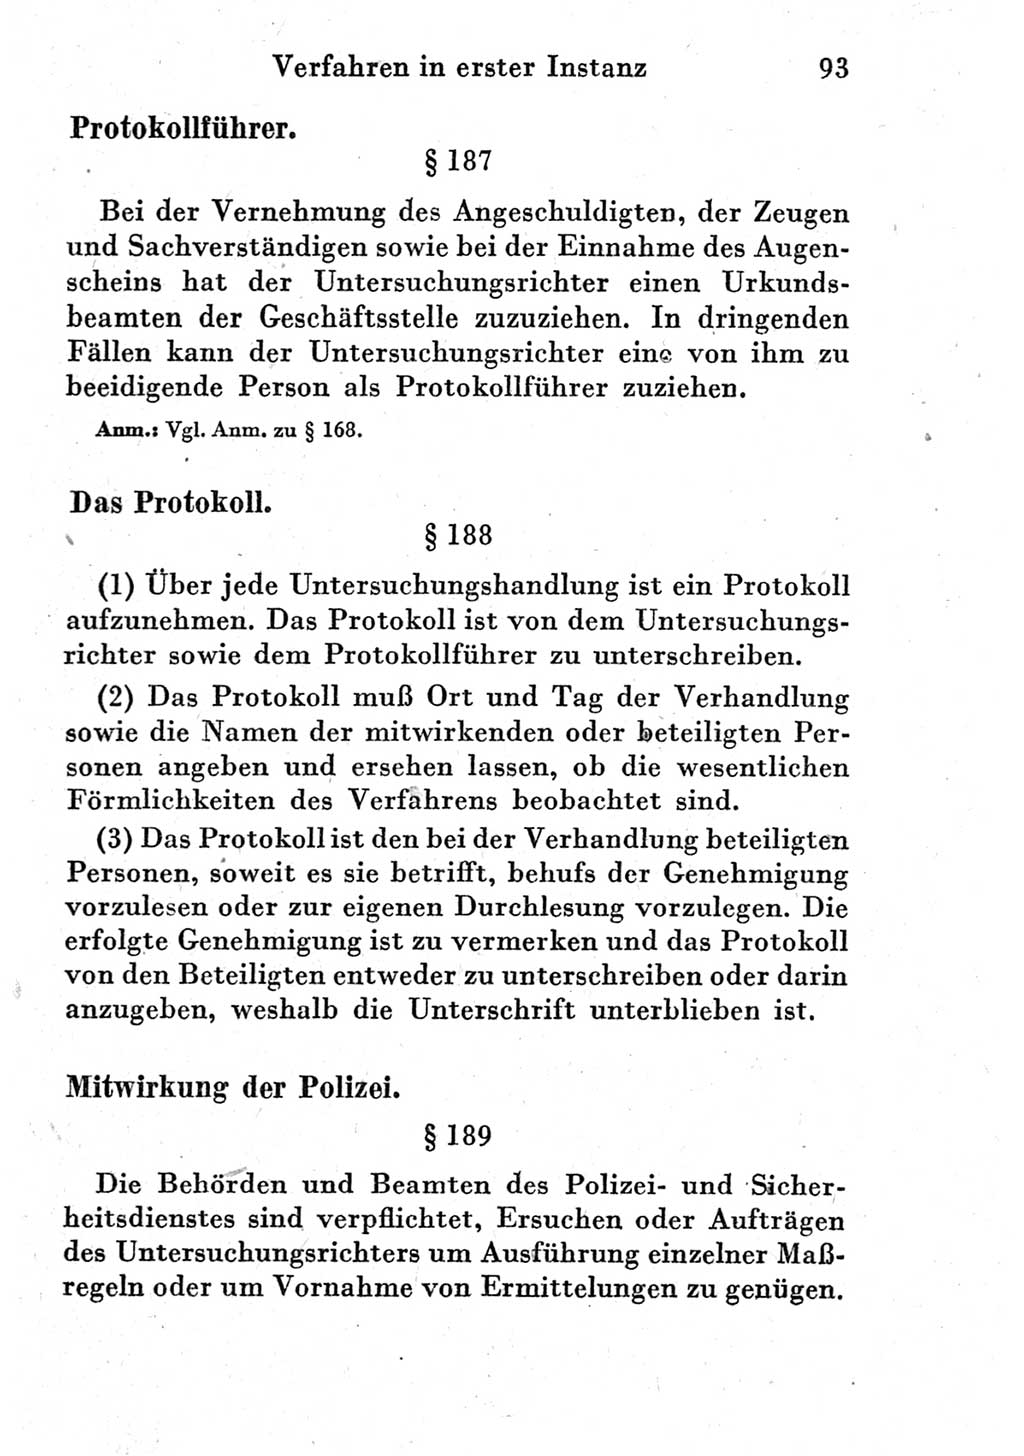 Strafprozeßordnung (StPO), Gerichtsverfassungsgesetz (GVG) und zahlreiche Nebengesetze der Deutschen Demokratischen Republik (DDR) 1950, Seite 93 (StPO GVG Ges. DDR 1950, S. 93)